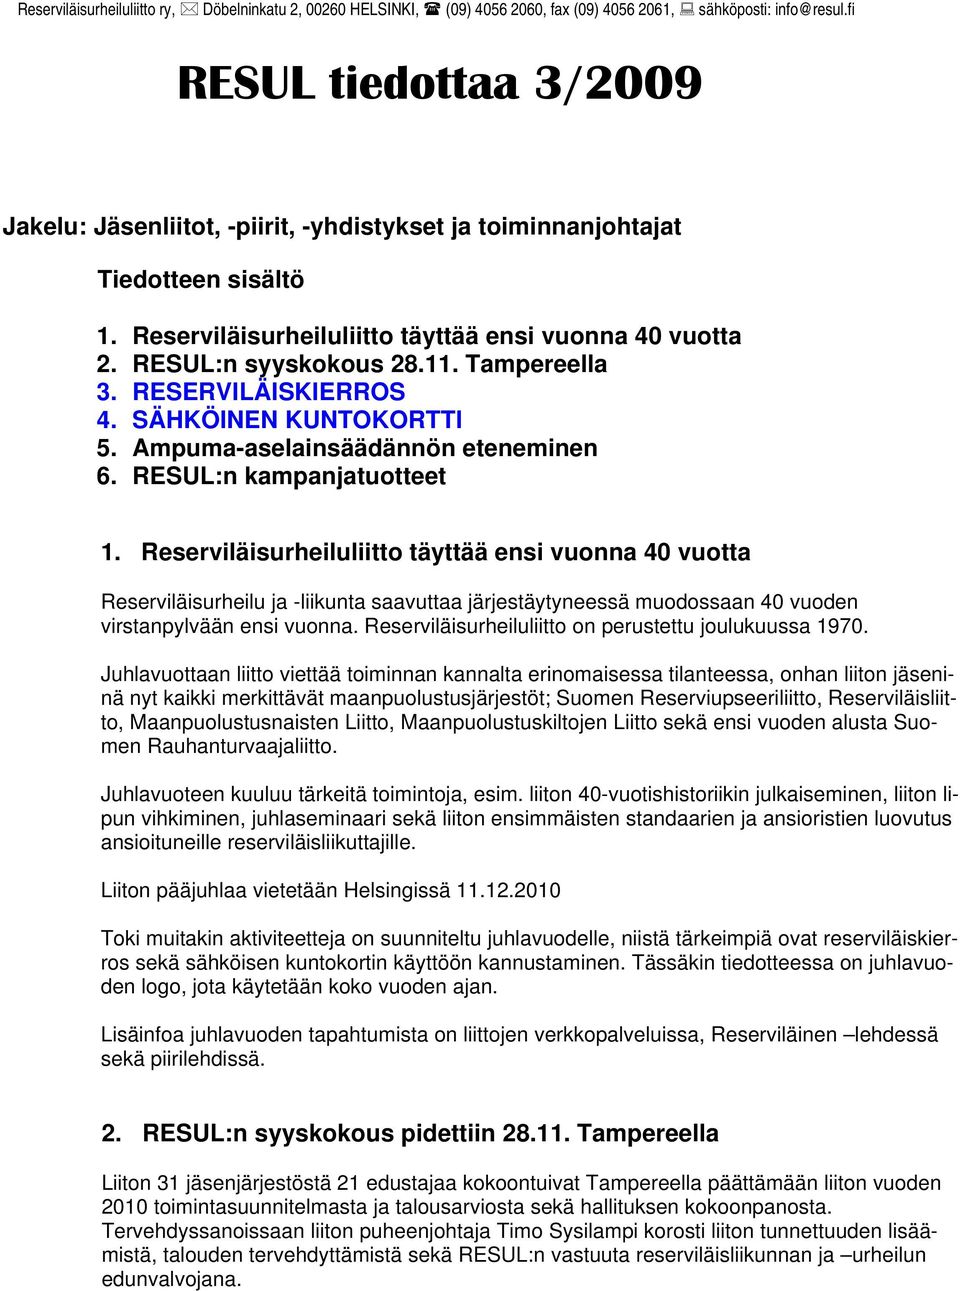 Tampereella 3. RESERVILÄISKIERROS 4. SÄHKÖINEN KUNTOKORTTI 5. Ampuma-aselainsäädännön eteneminen 6. RESUL:n kampanjatuotteet 1.